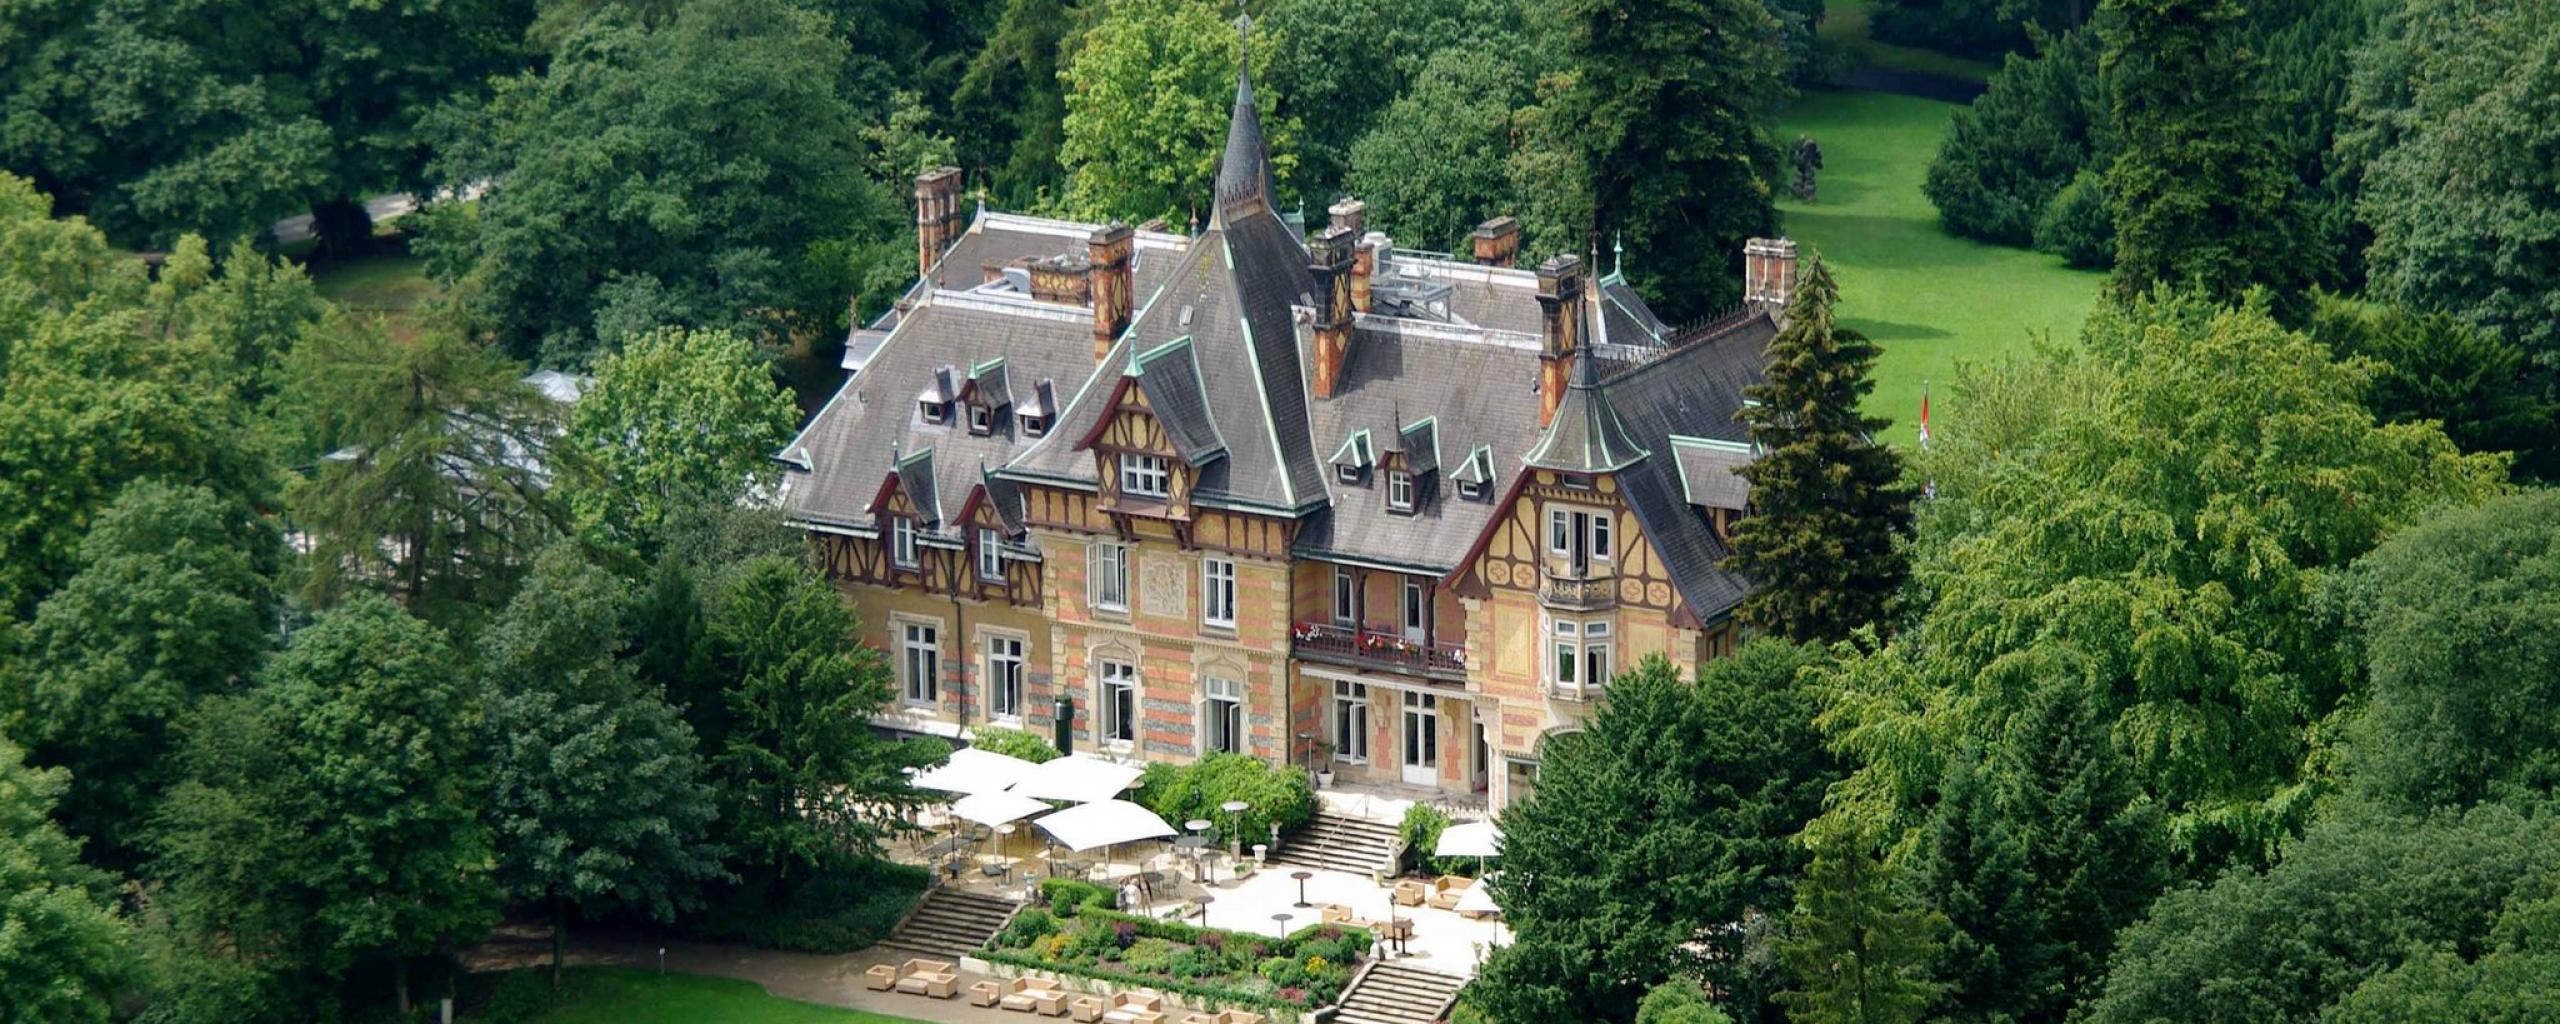 Restaurant Villa Rothschild